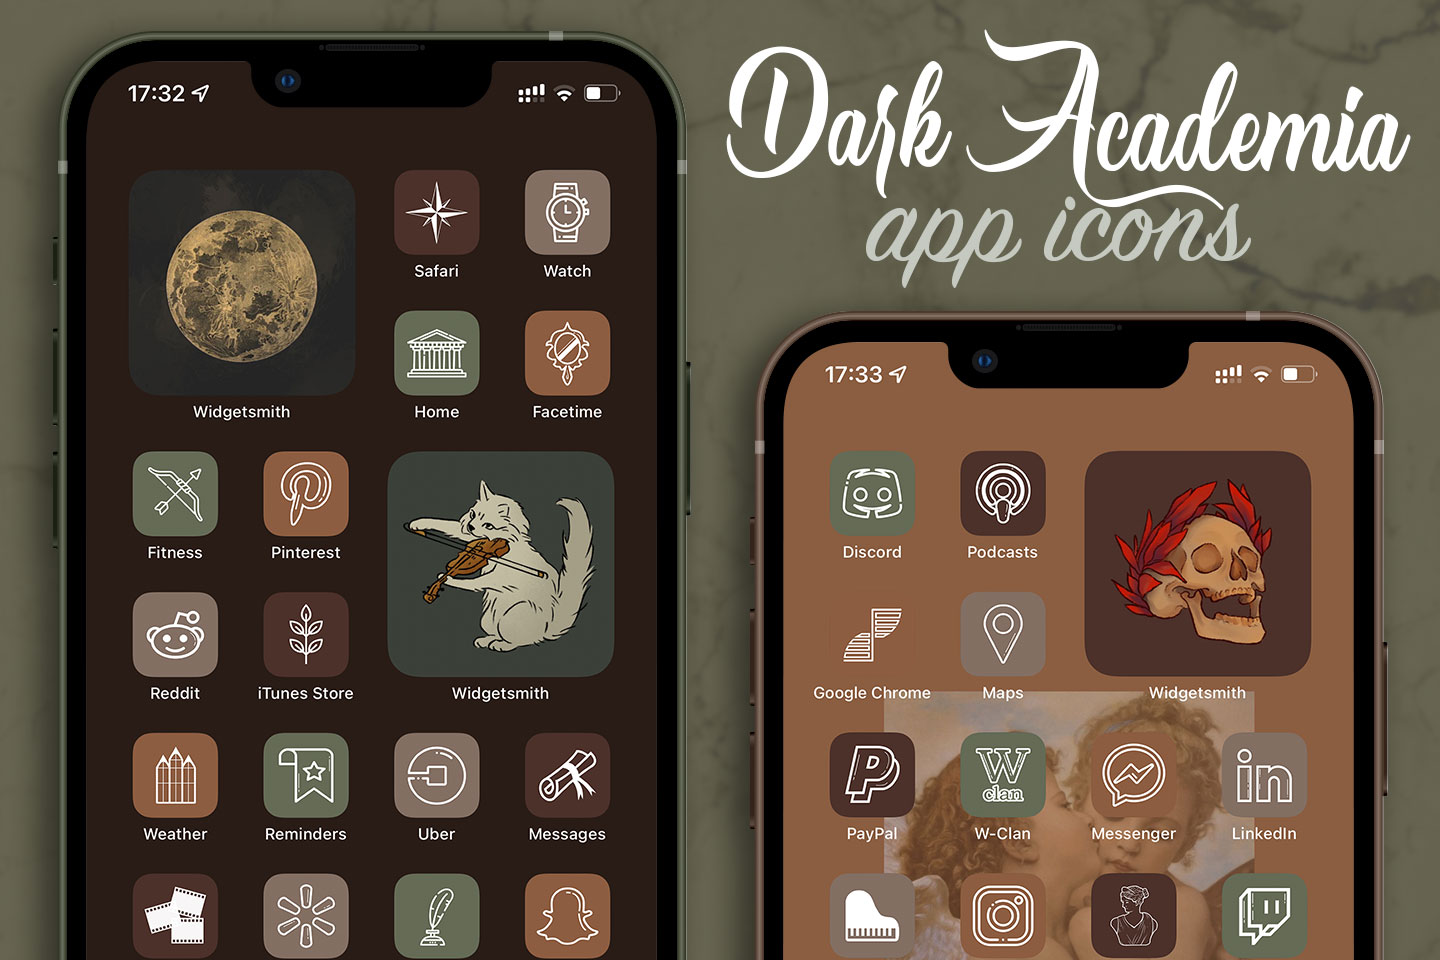 Pack d’icônes d’applications esthétiques Dark Academia